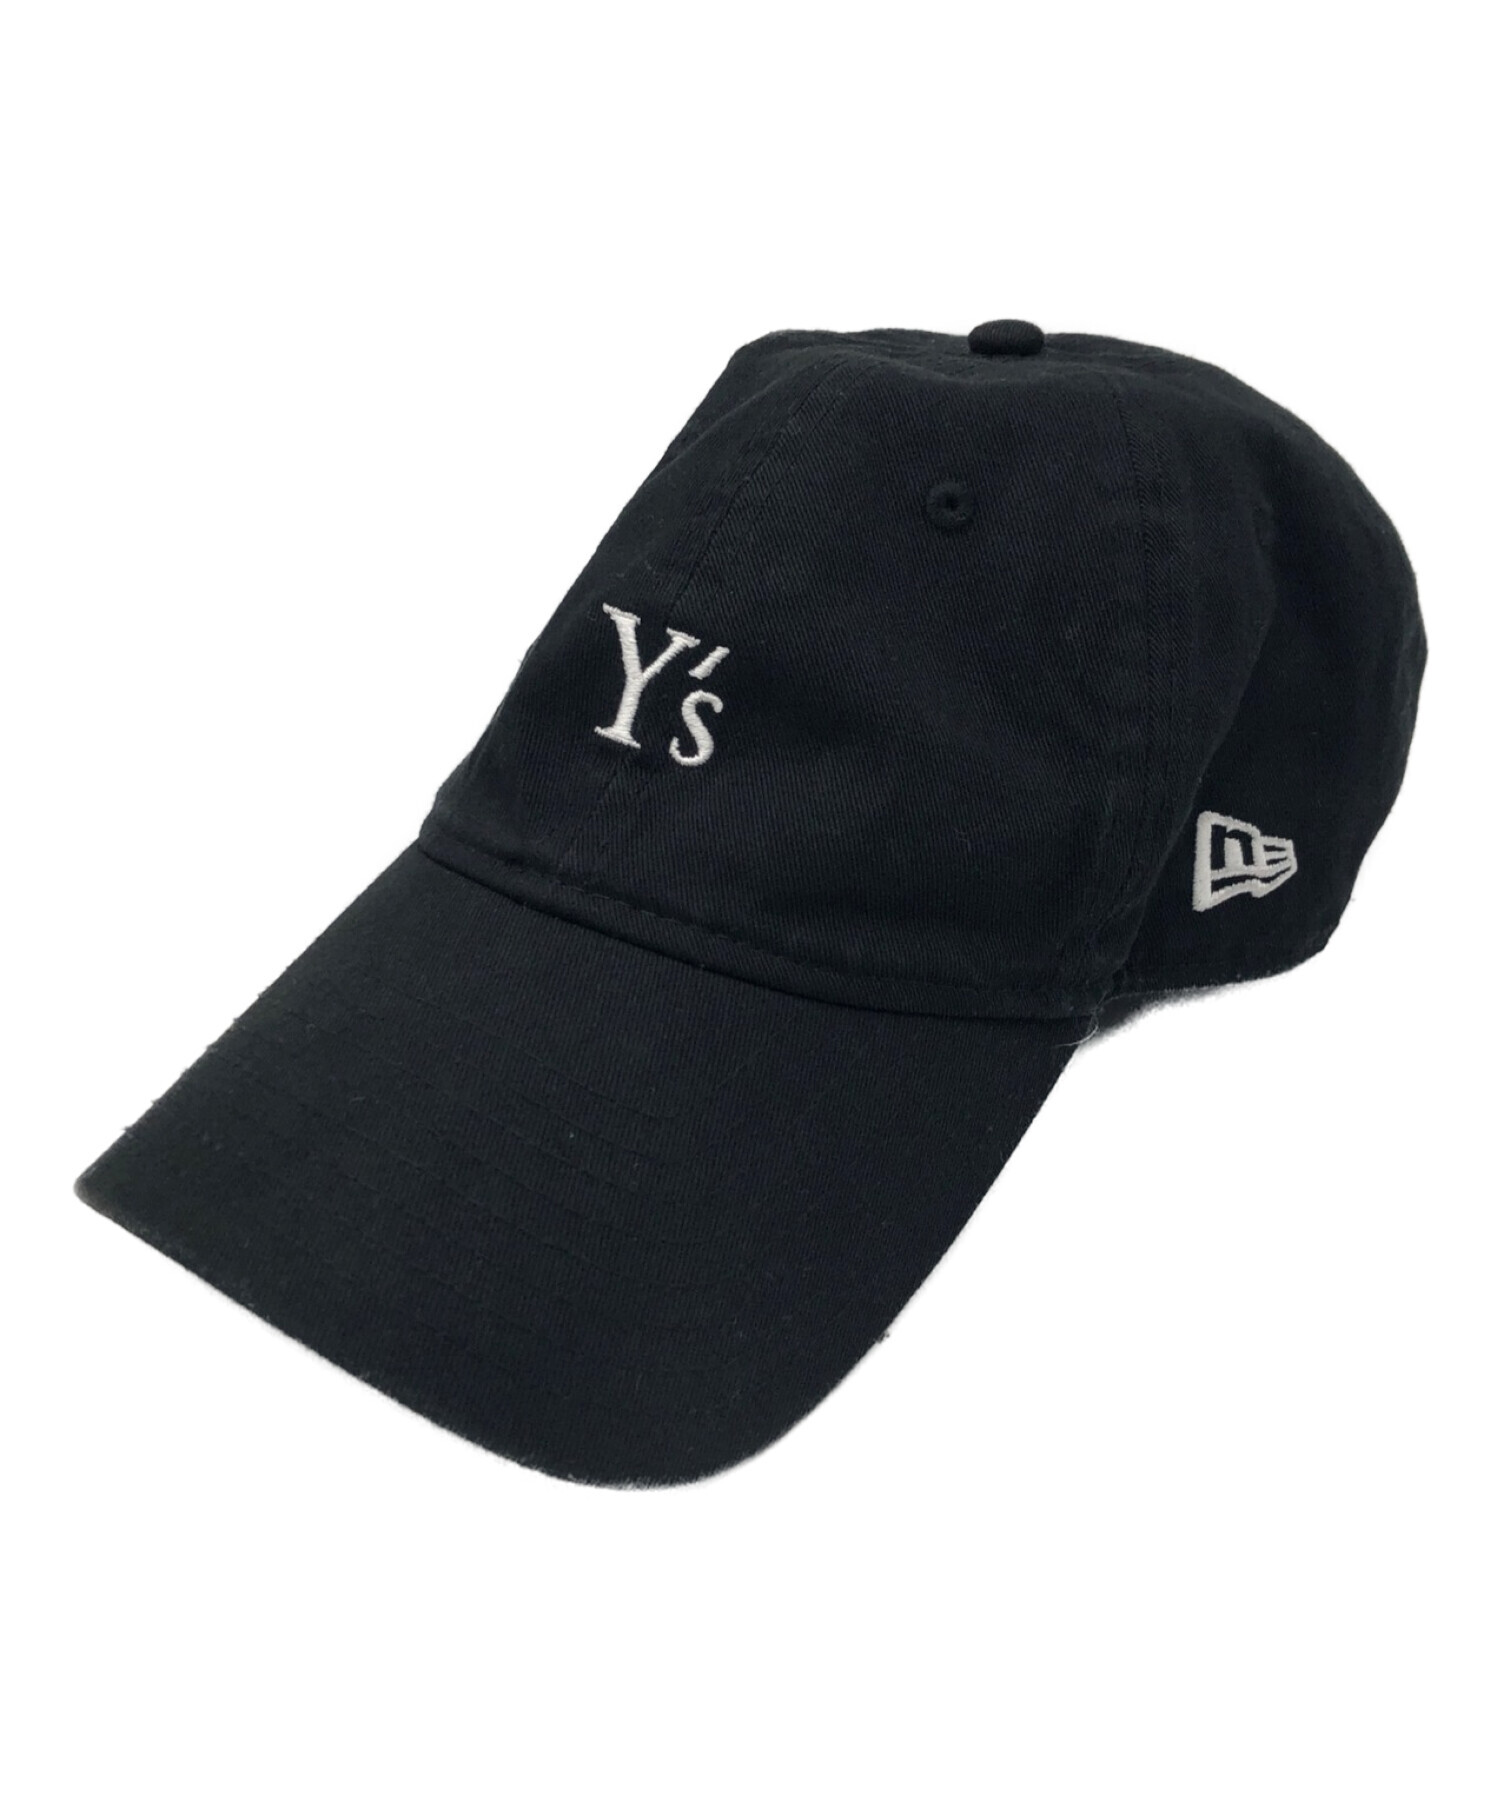 y's帽子